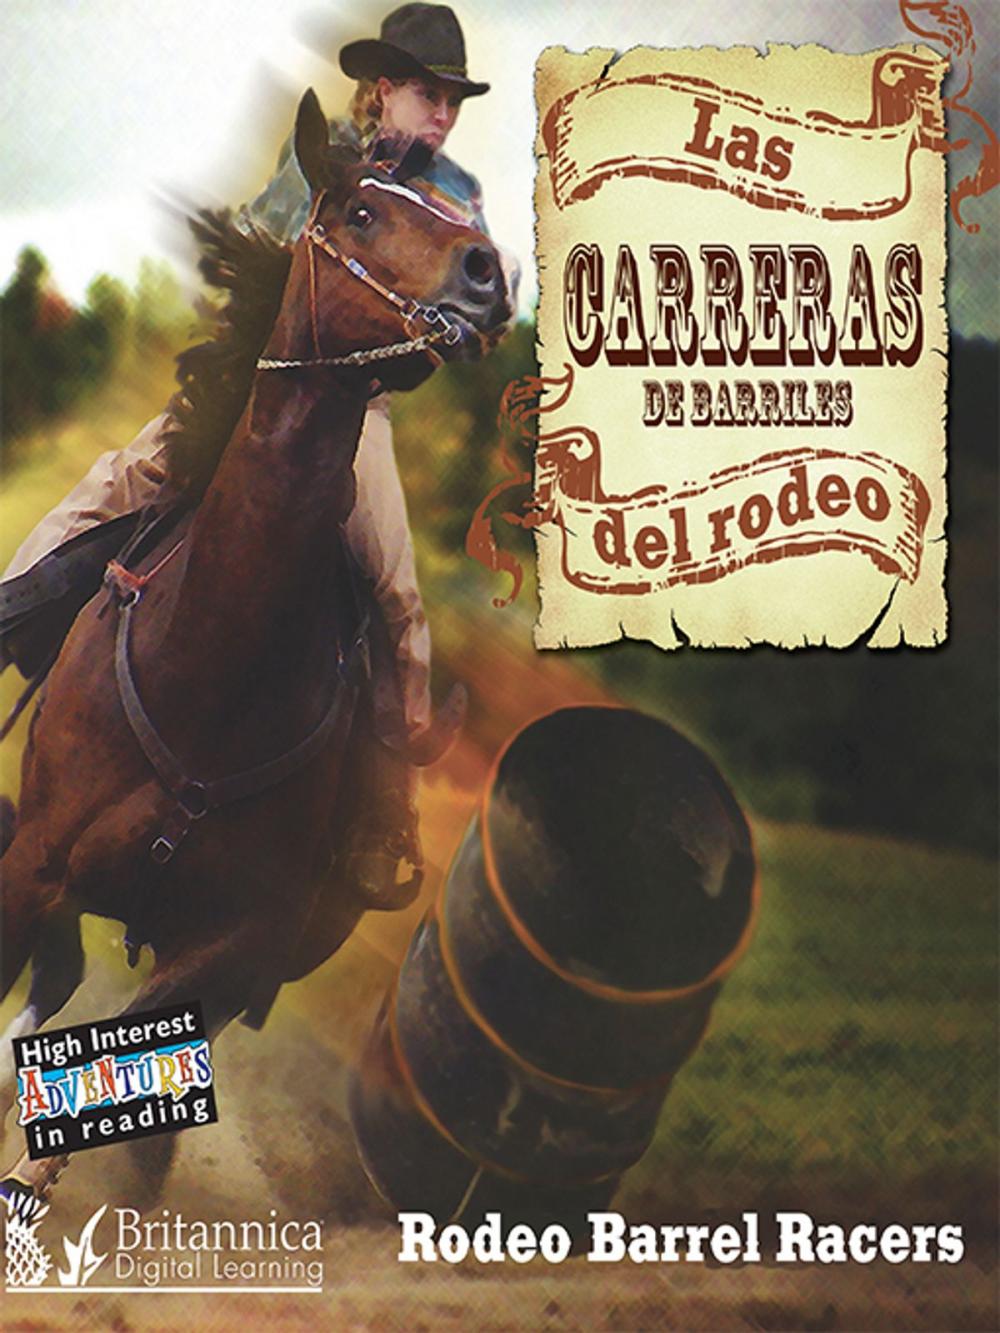 Big bigCover of Las Carreras del Rodeo (Rodeo Barrel Racers)